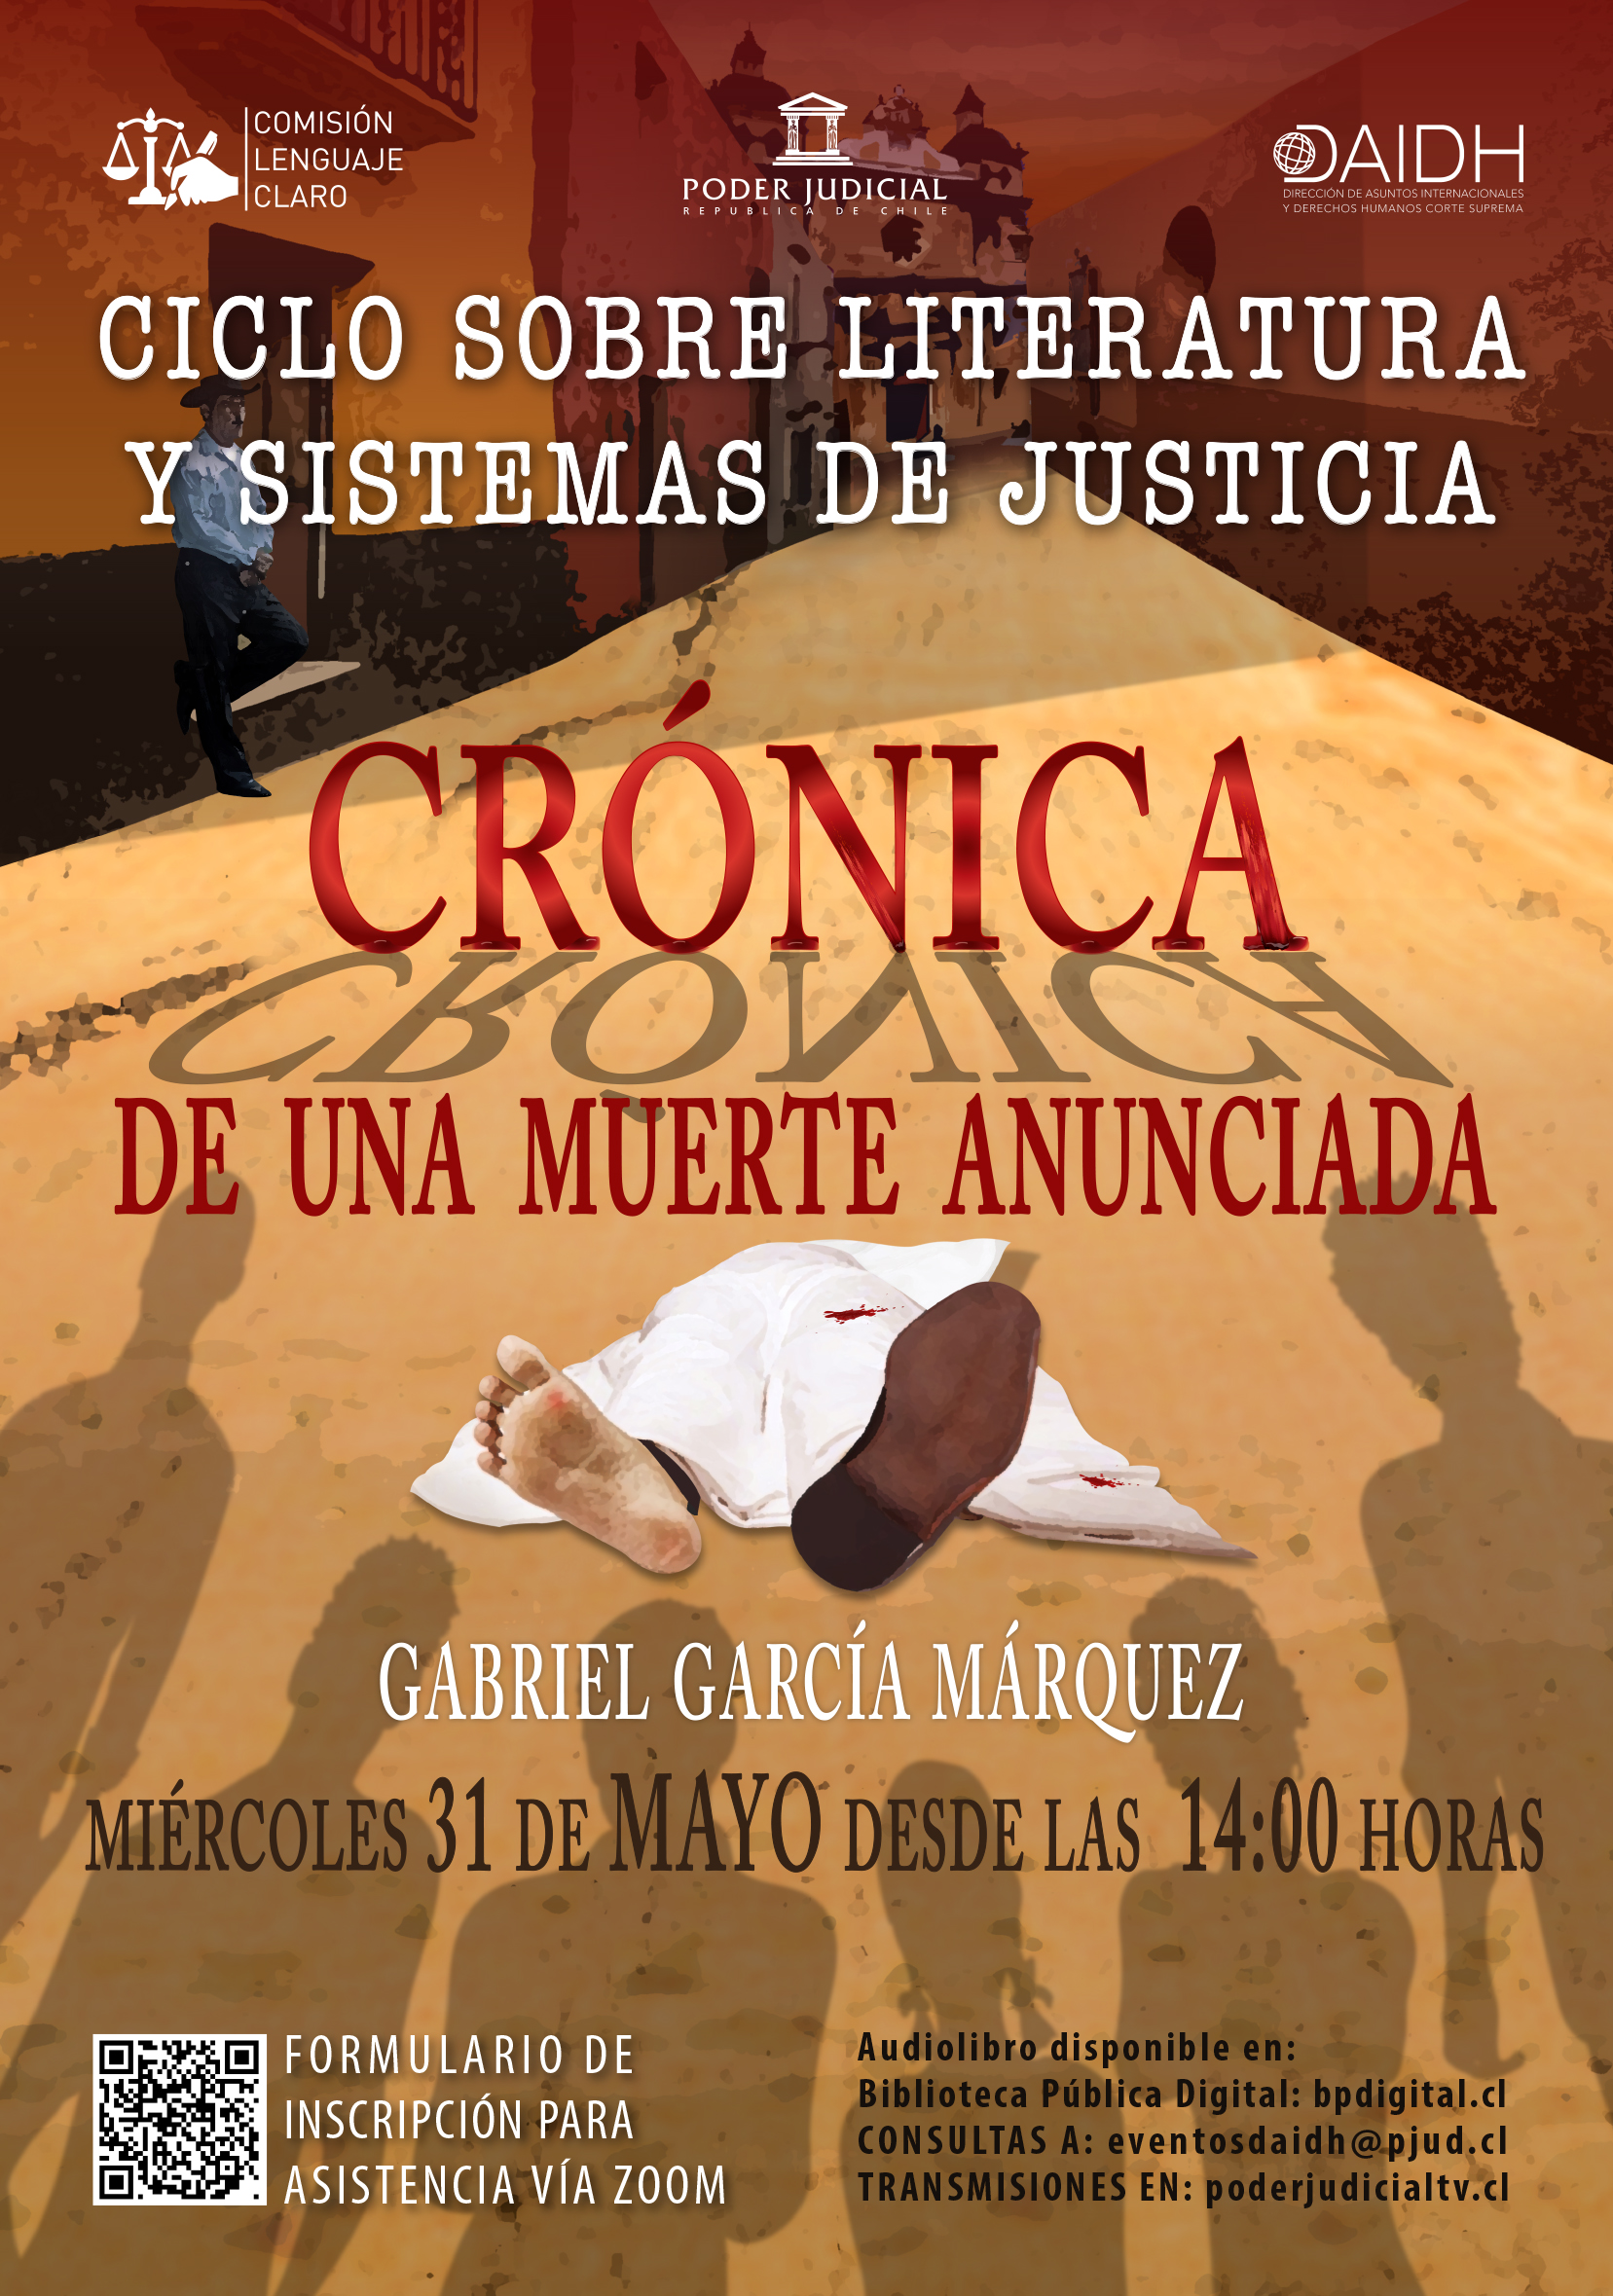 Ciclo sobre Literatura y Sistema de Justicia de la Corte Suprema presentará “Crónica de una muerte anunciada” de Gabriel García Márquez.